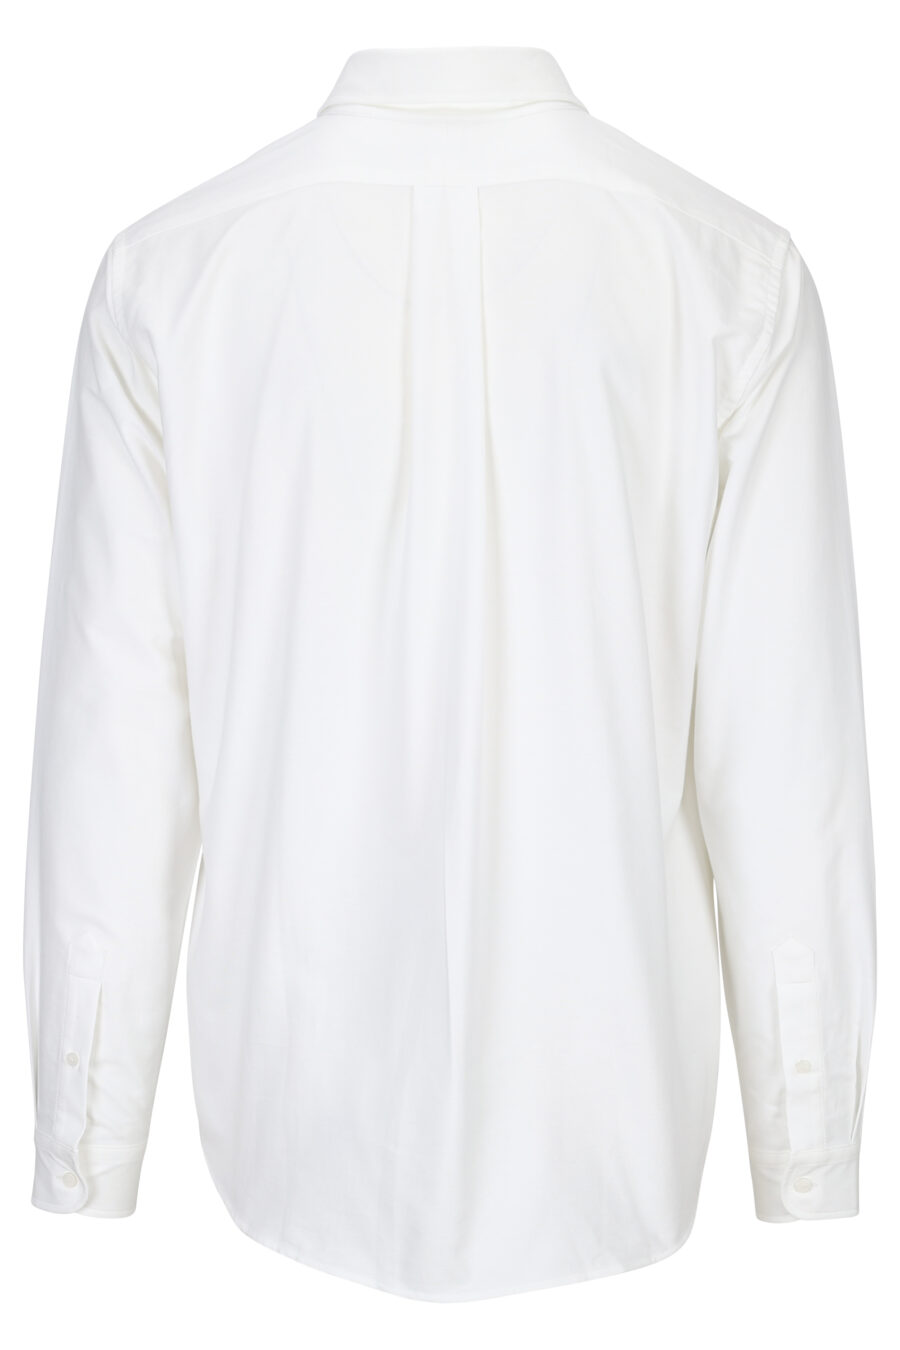 Chemise blanche avec mini-logo "boke flower" - 3612230543140 12